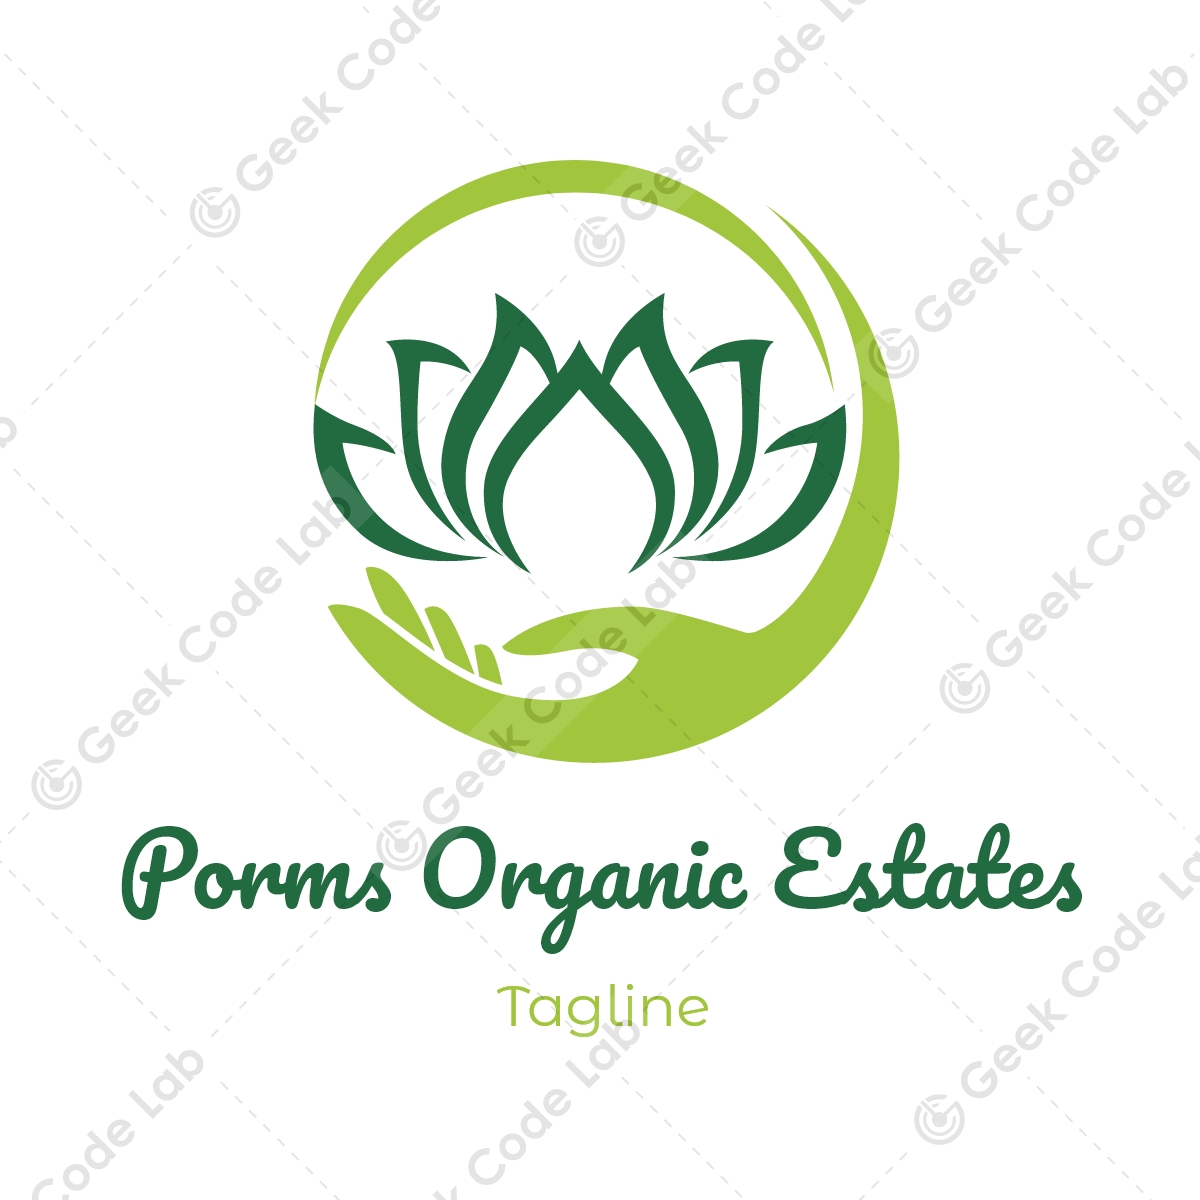 Porms Organic Estates